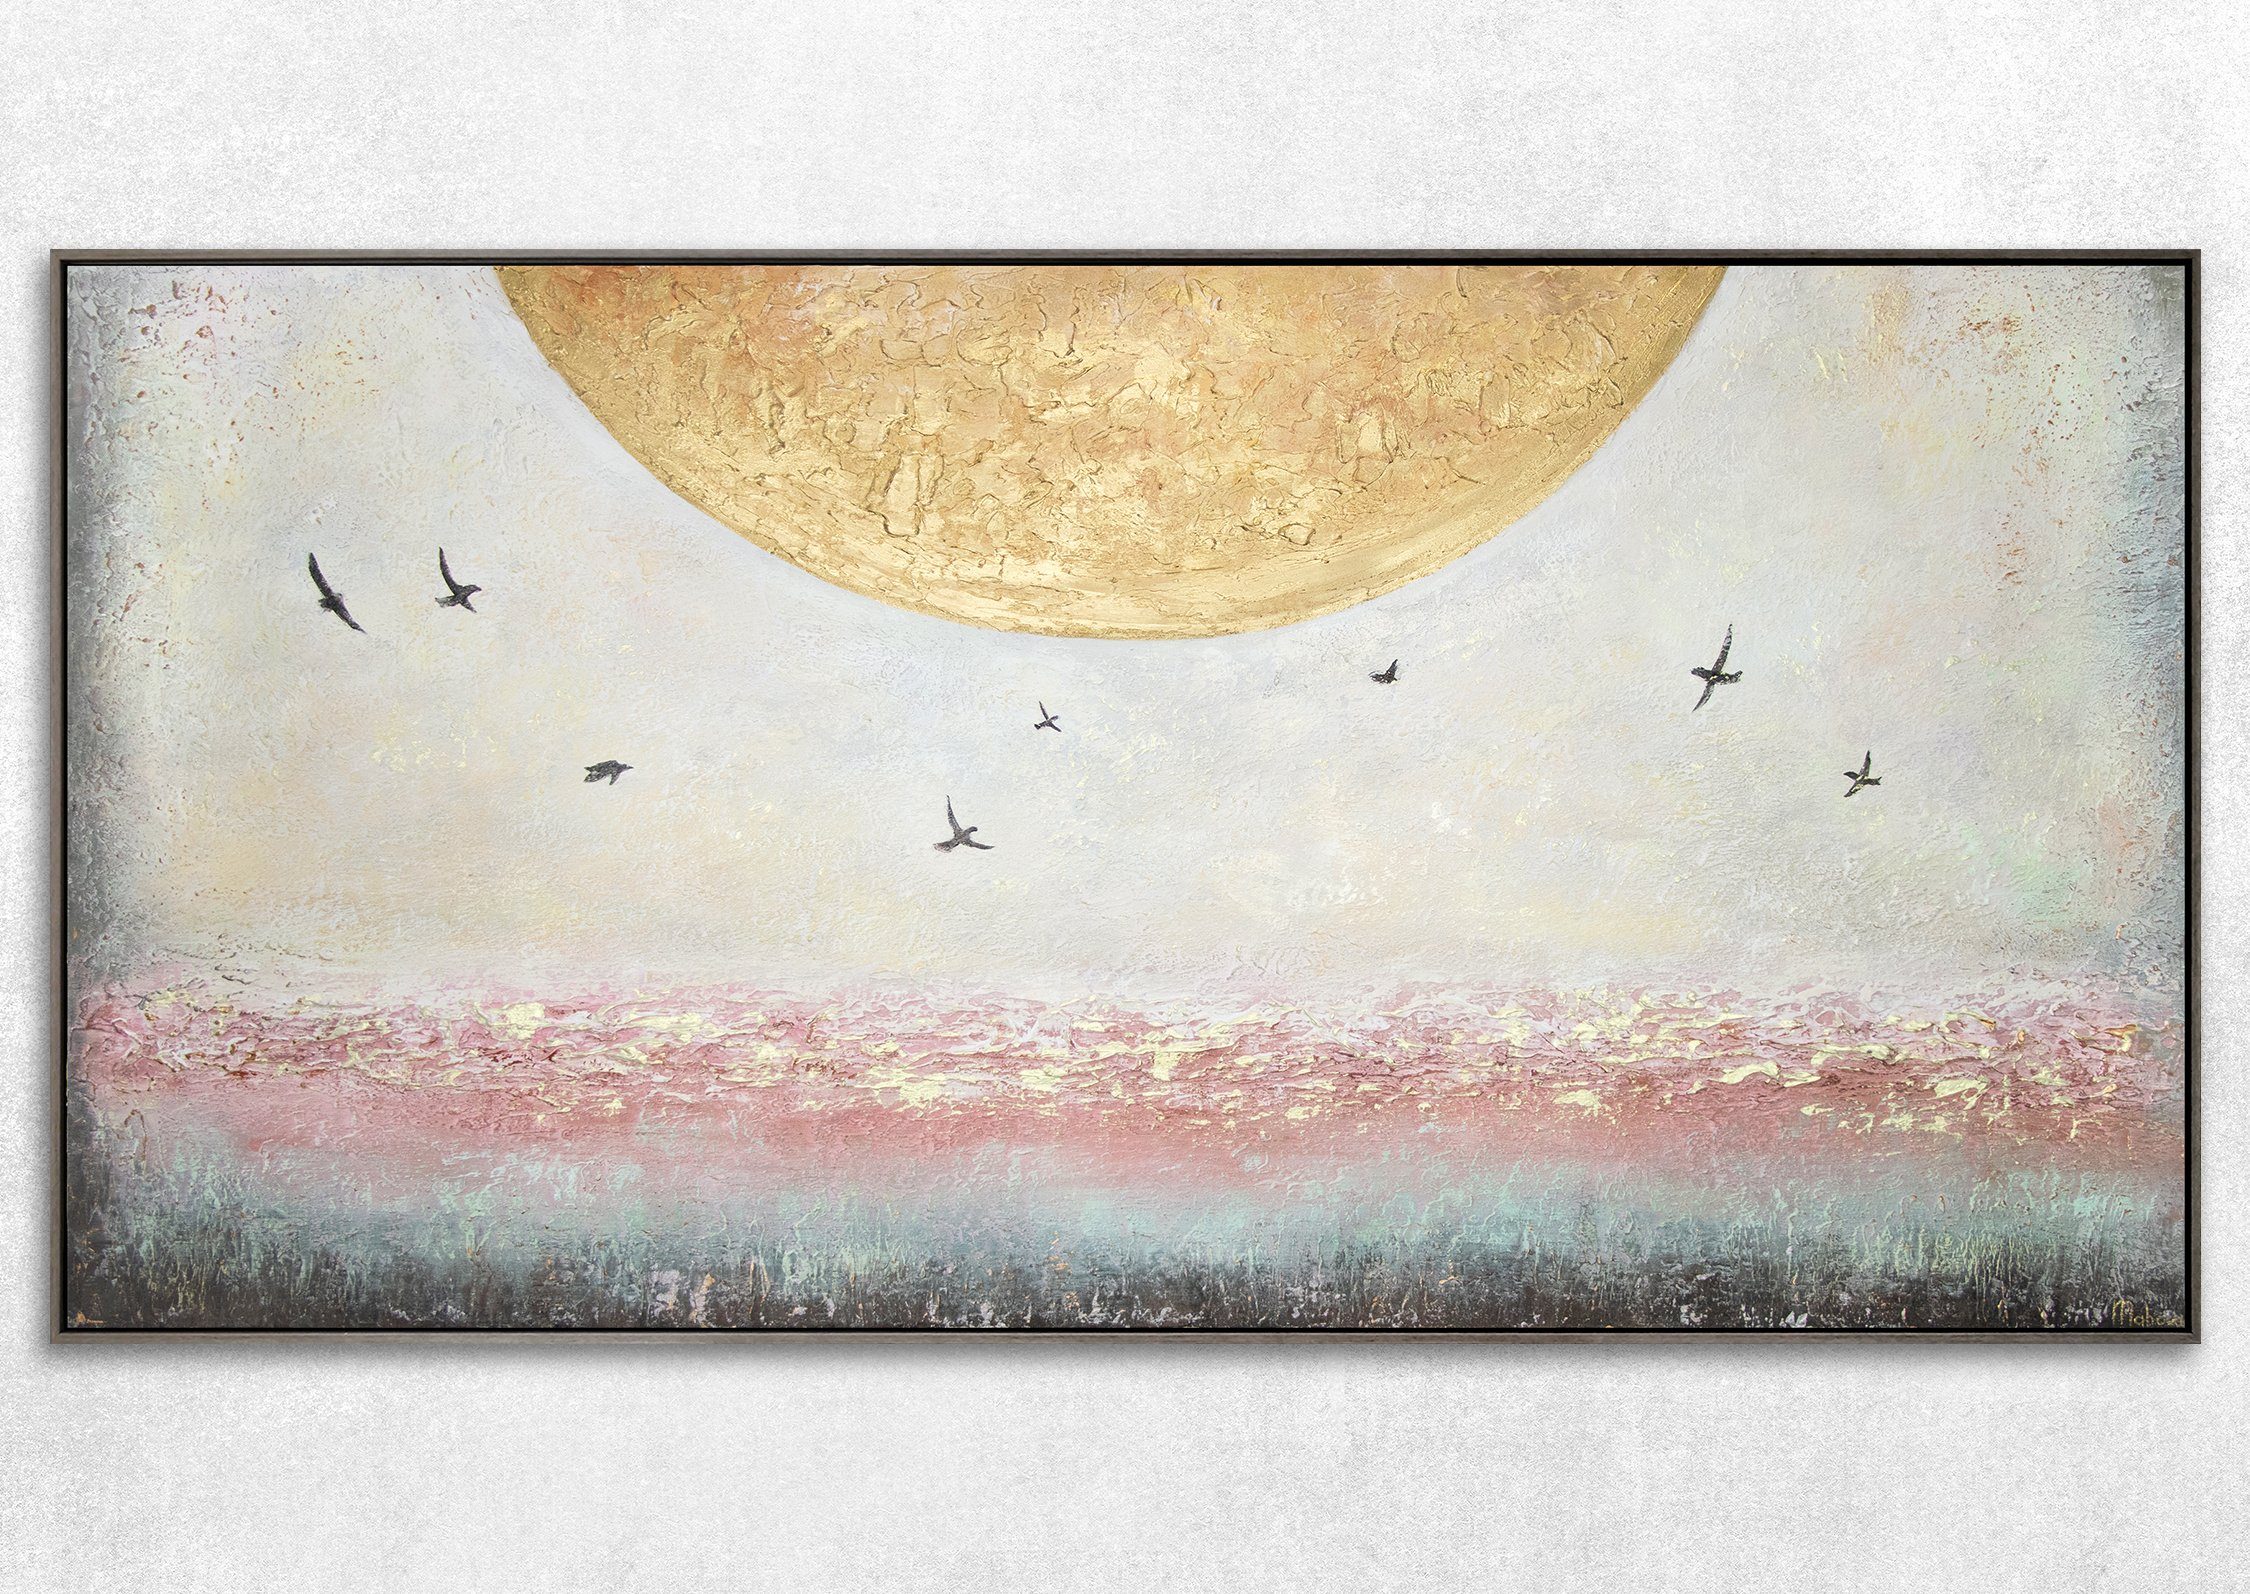 YS-Art Gemälde Sonnenenergie, Leinwand Handgemalt Grau in Süden Landschaft, Sonne Bild Gold Mit Rahmen Vögel